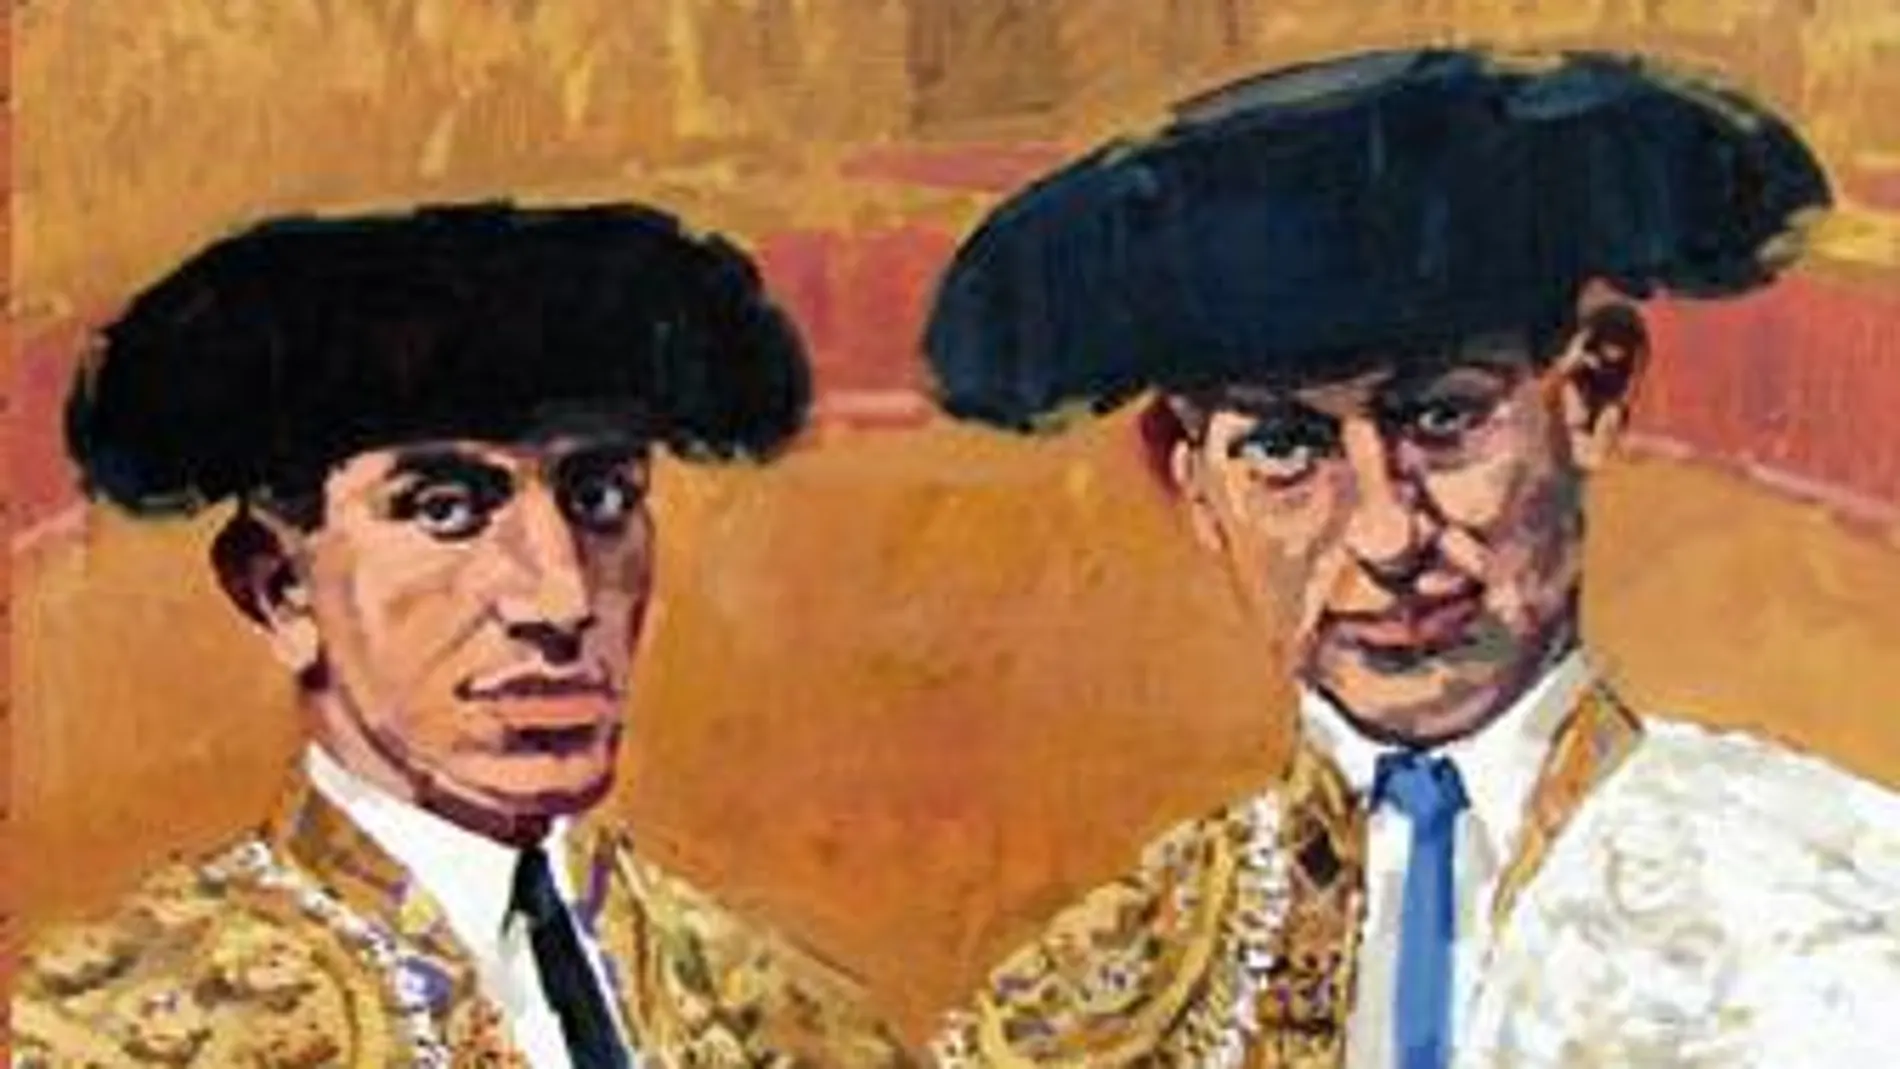 El cartel muestra a Joselito y Belmonte